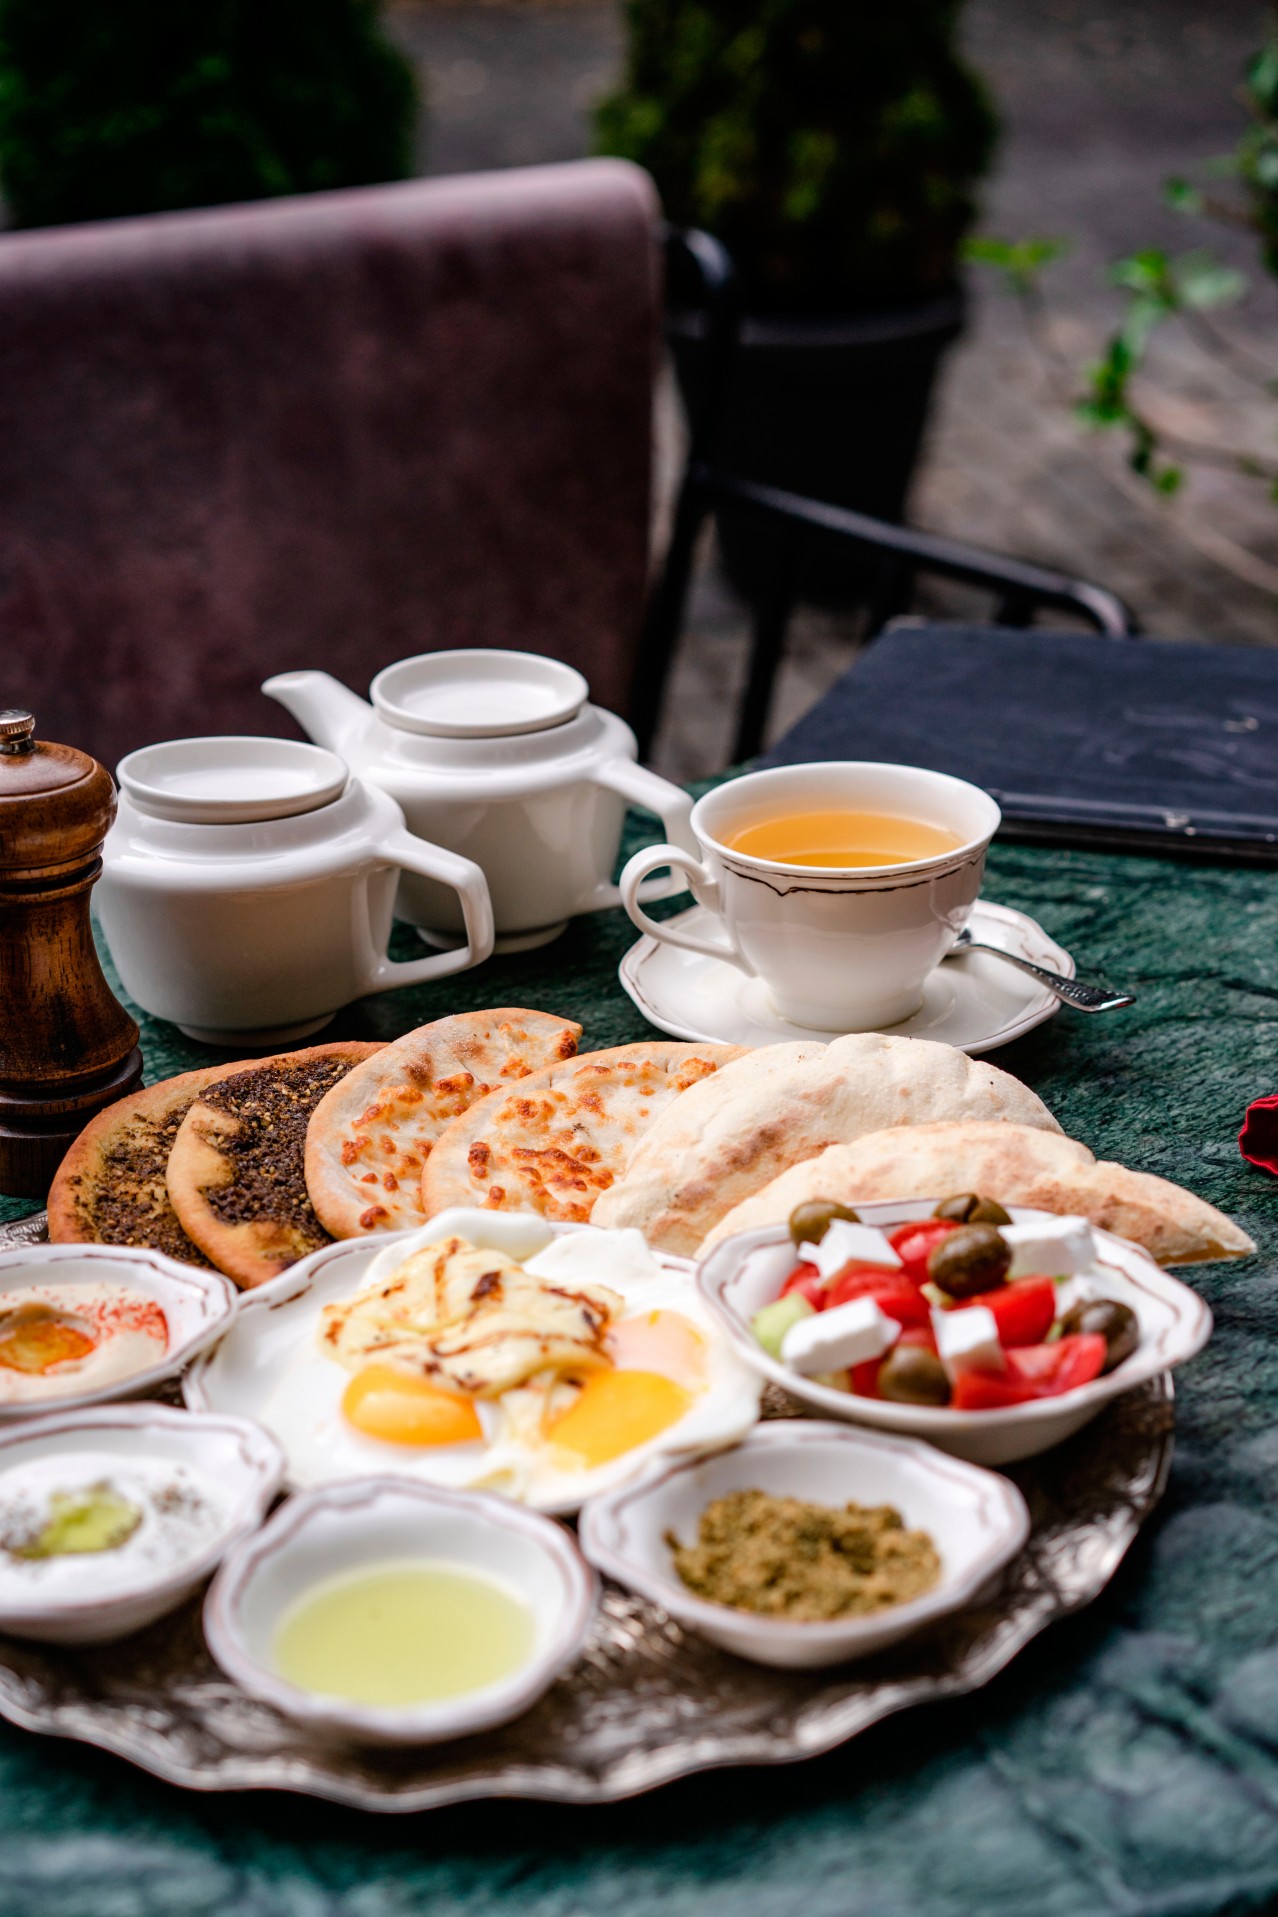 Turkish breakfast in the outdoor restaurant